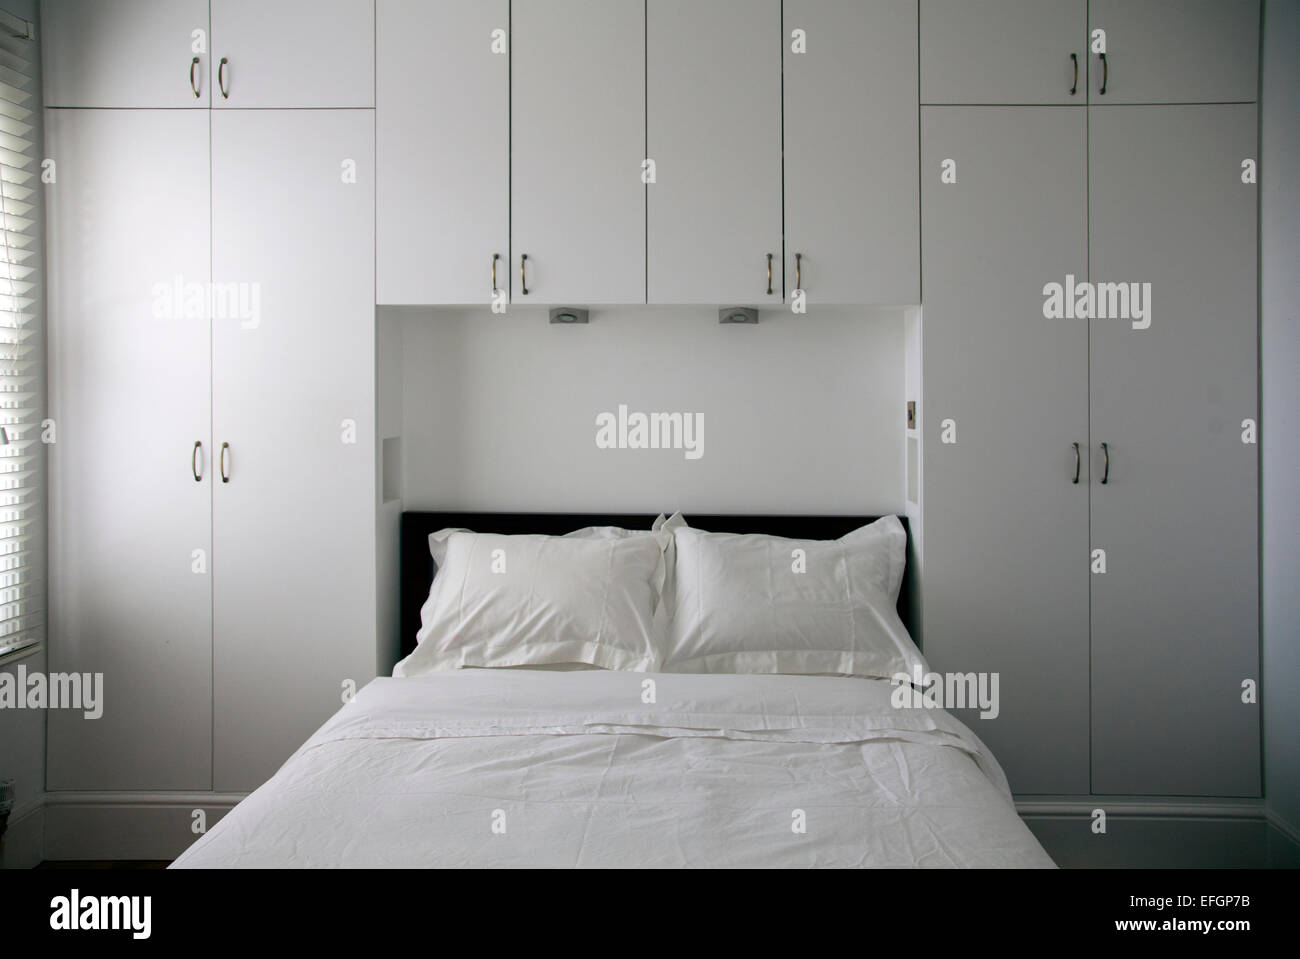 Interiore camera da letto con lenzuola bianche Foto Stock